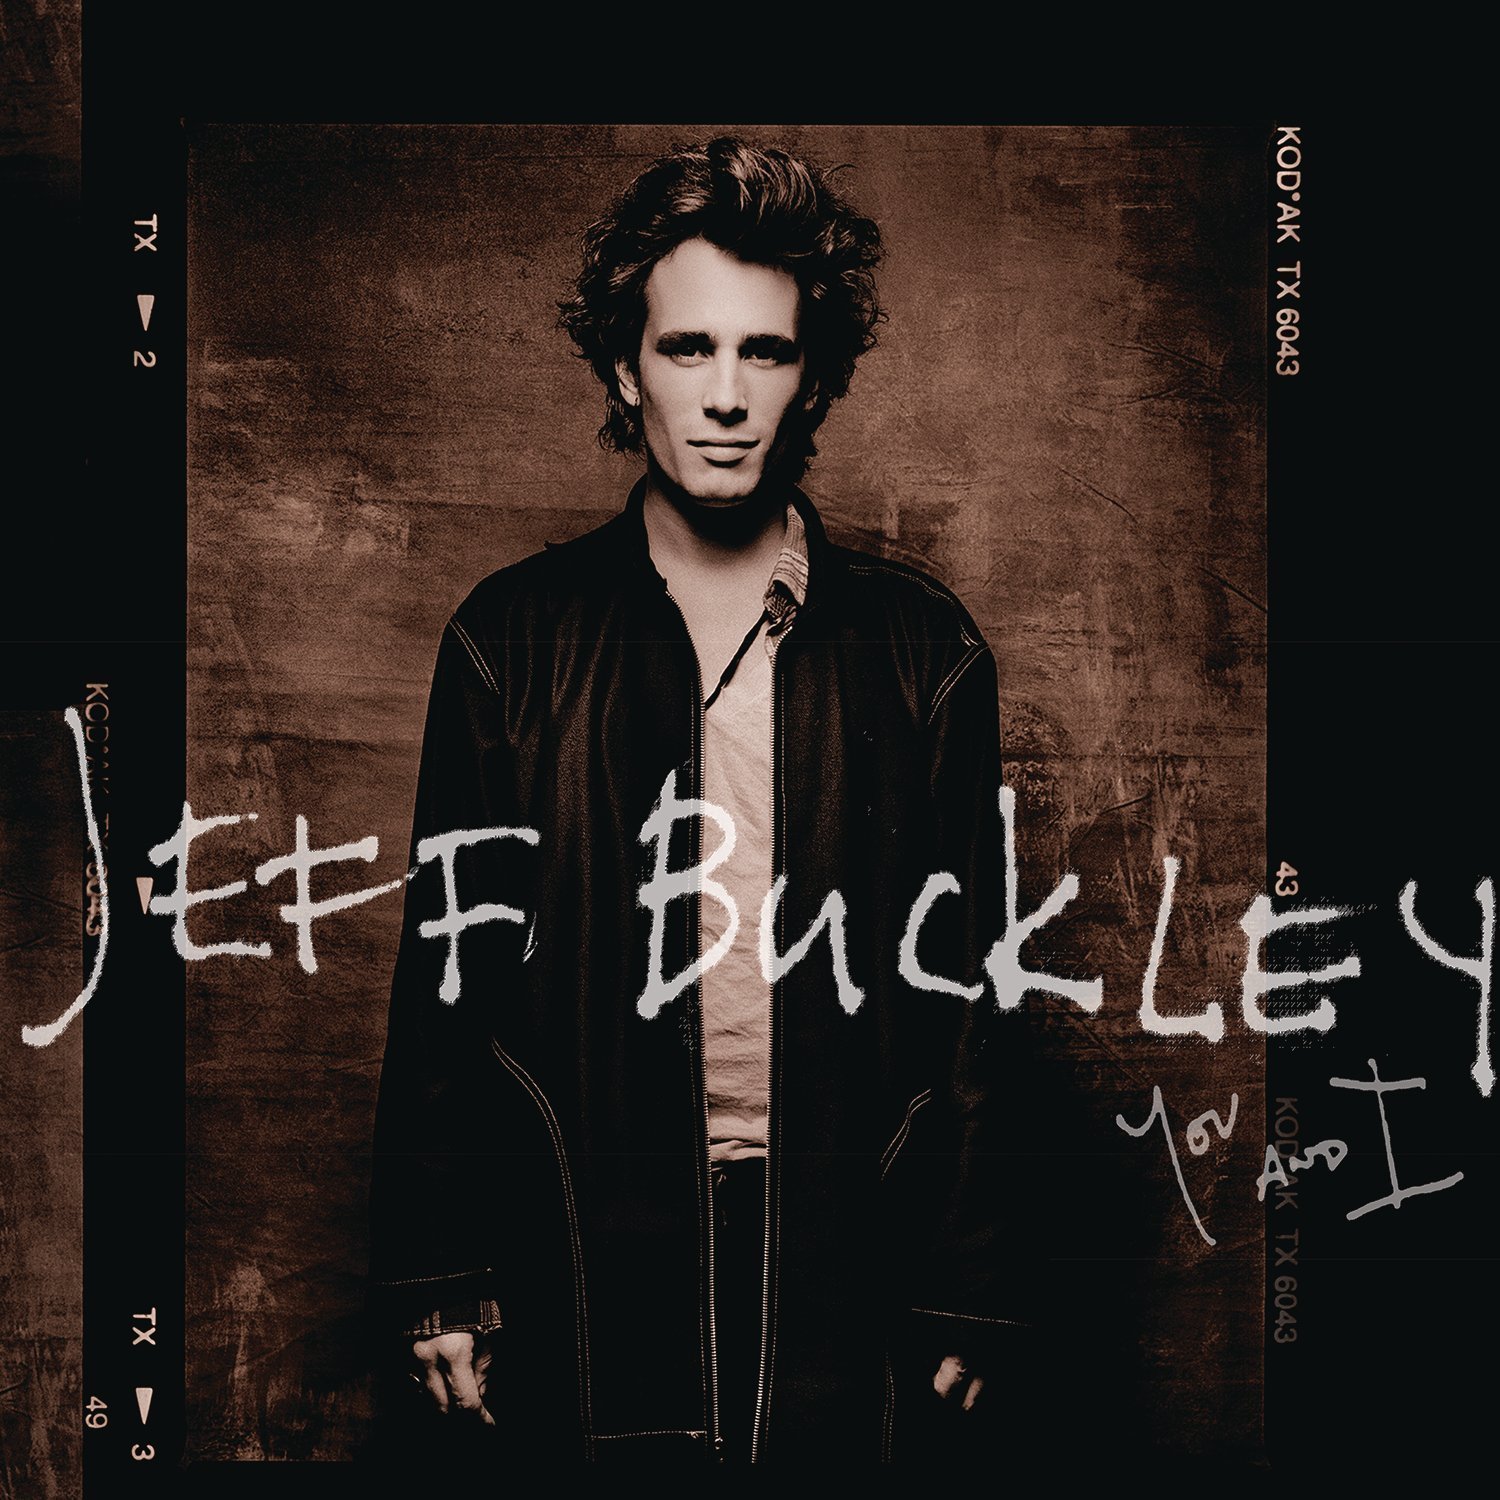 LP deska Jeff Buckley You and I (2 LP)